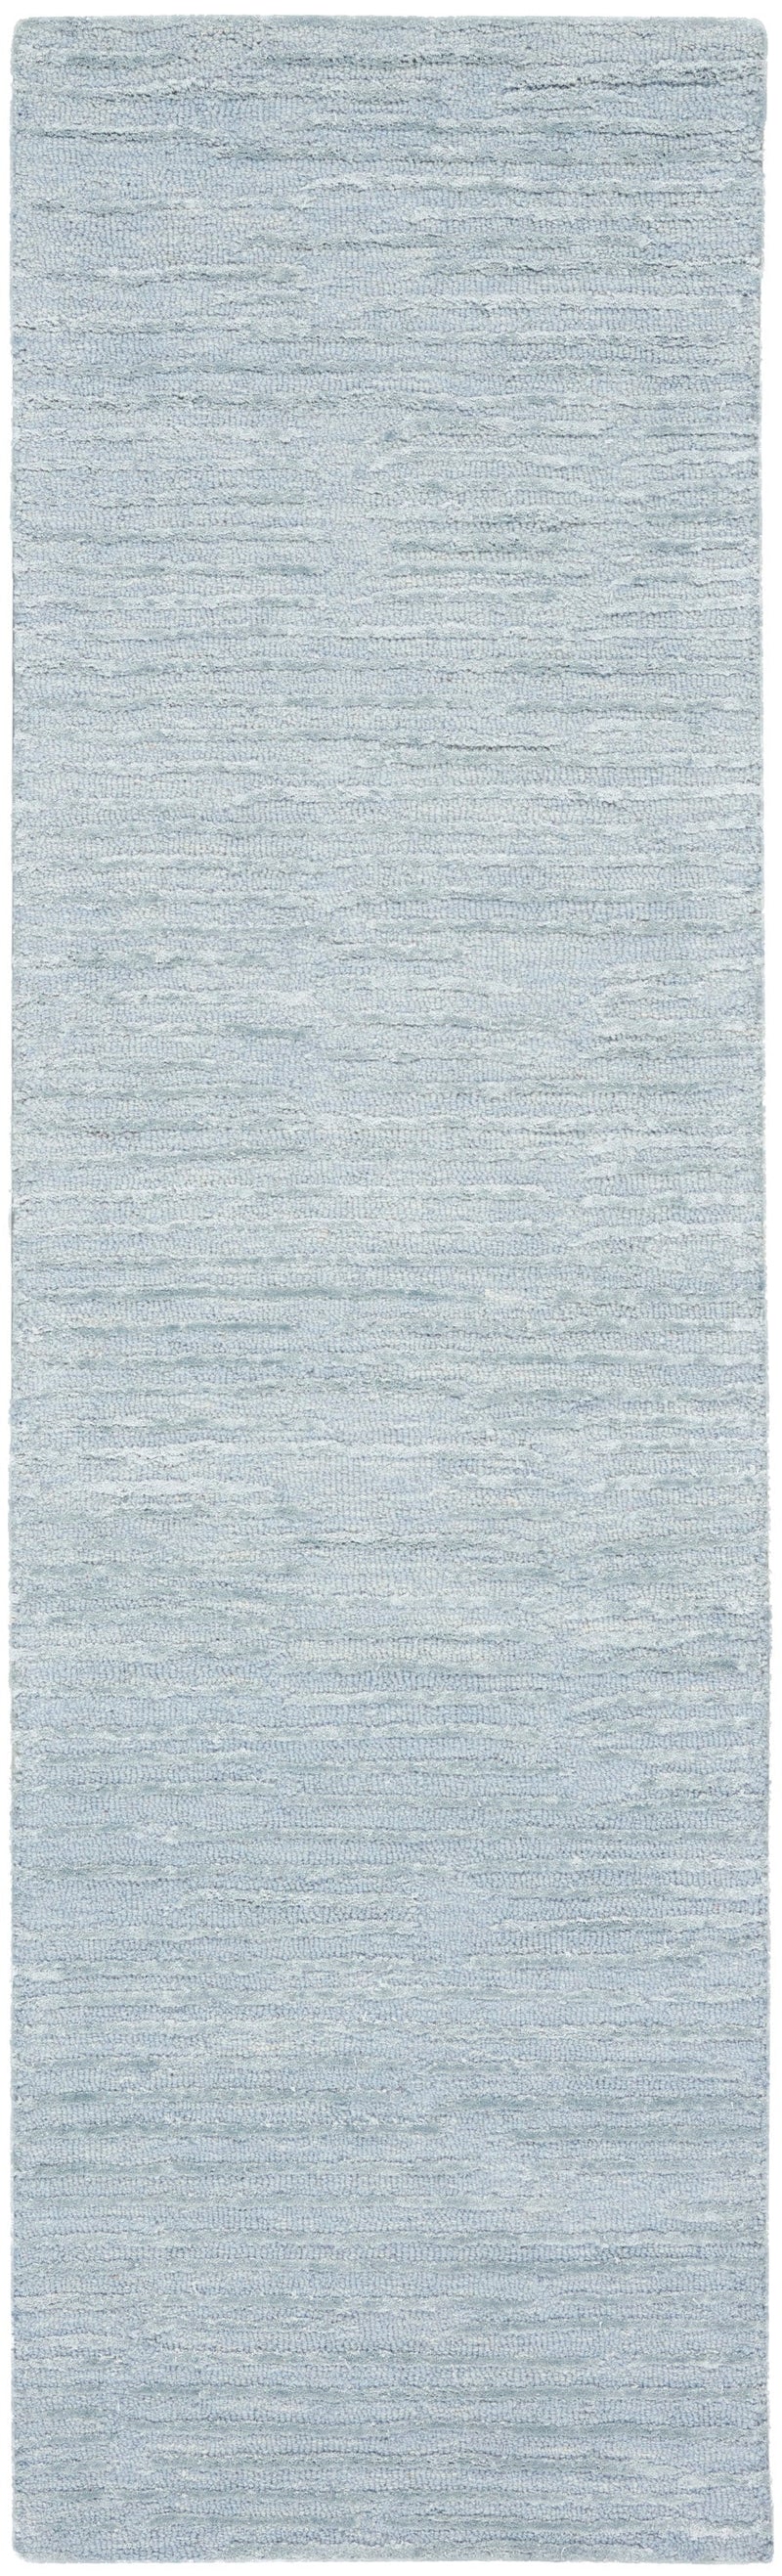 media image for ck010 linear handmade light blue rug by nourison 99446879950 redo 2 288